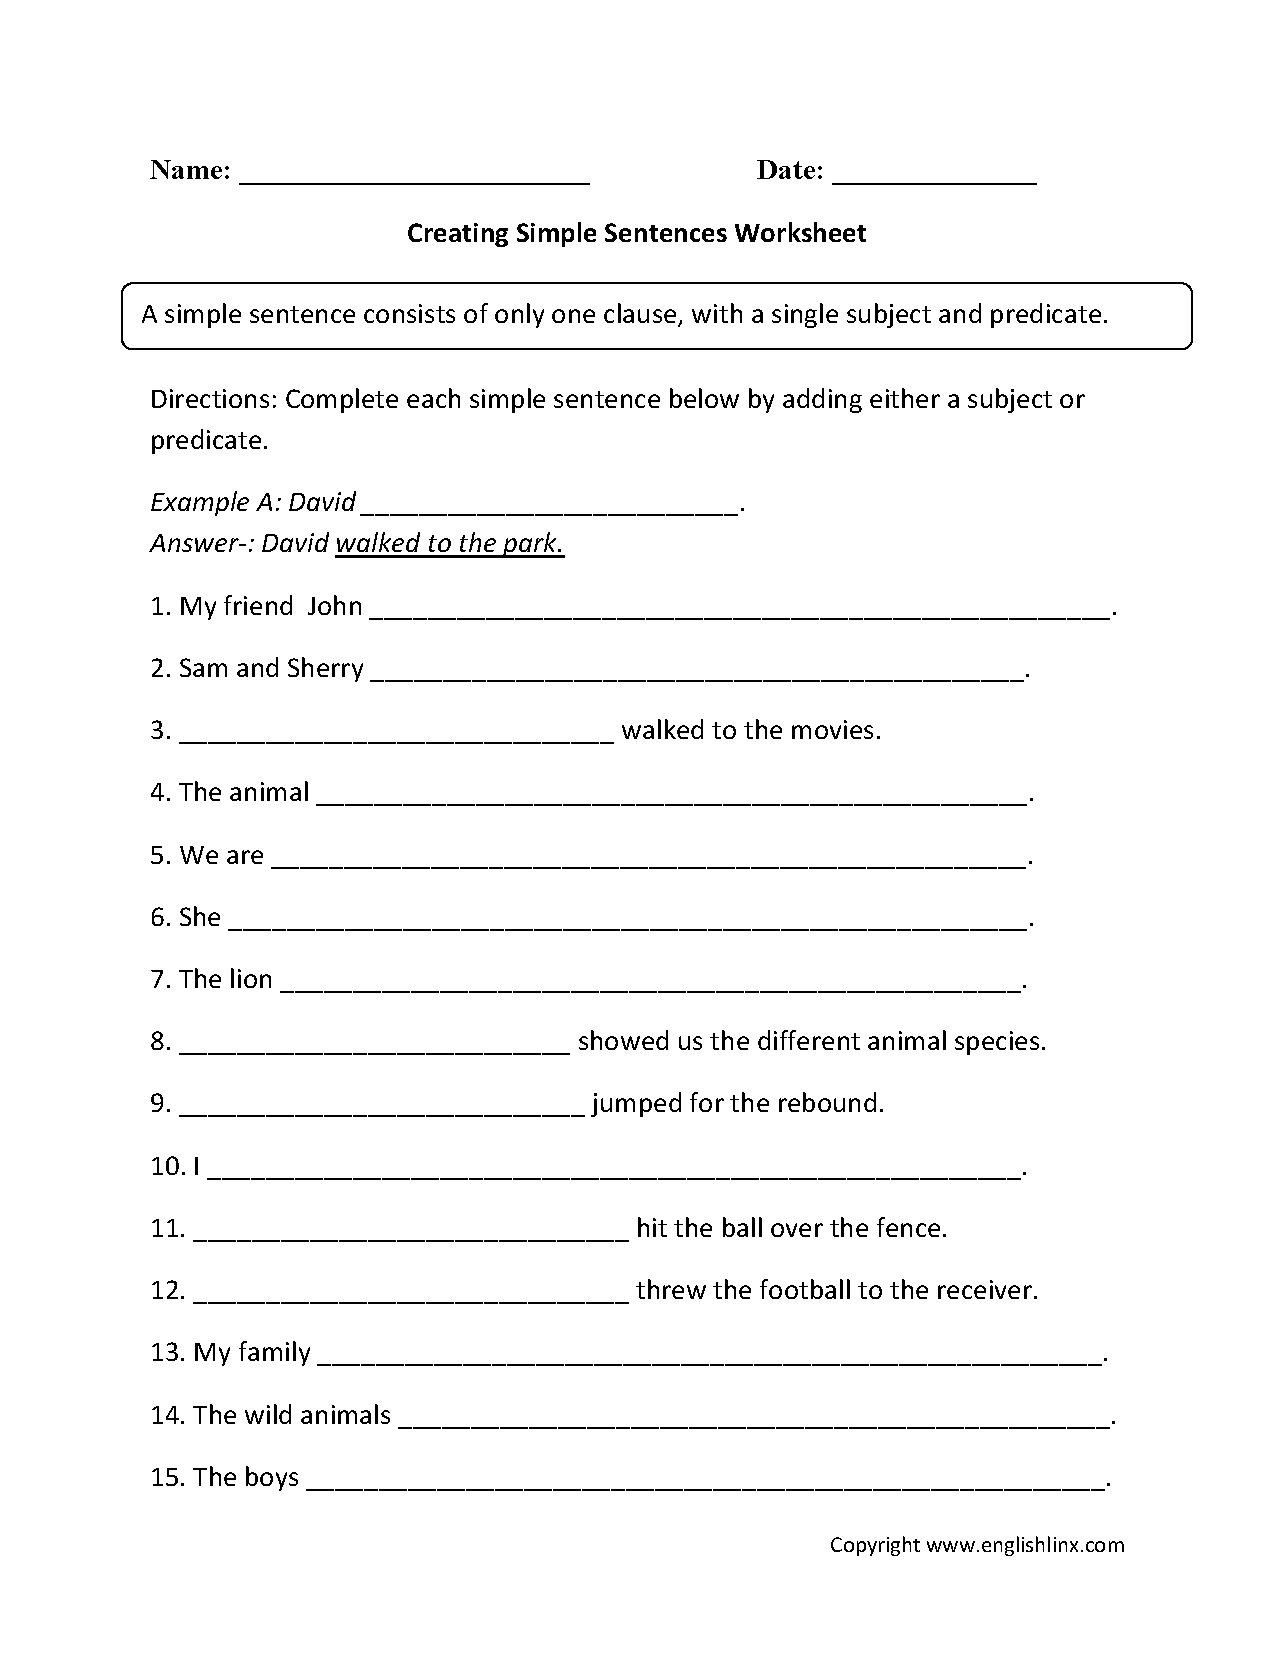 combine-sentences-worksheets-simple-sentences-worksheet-paragraph